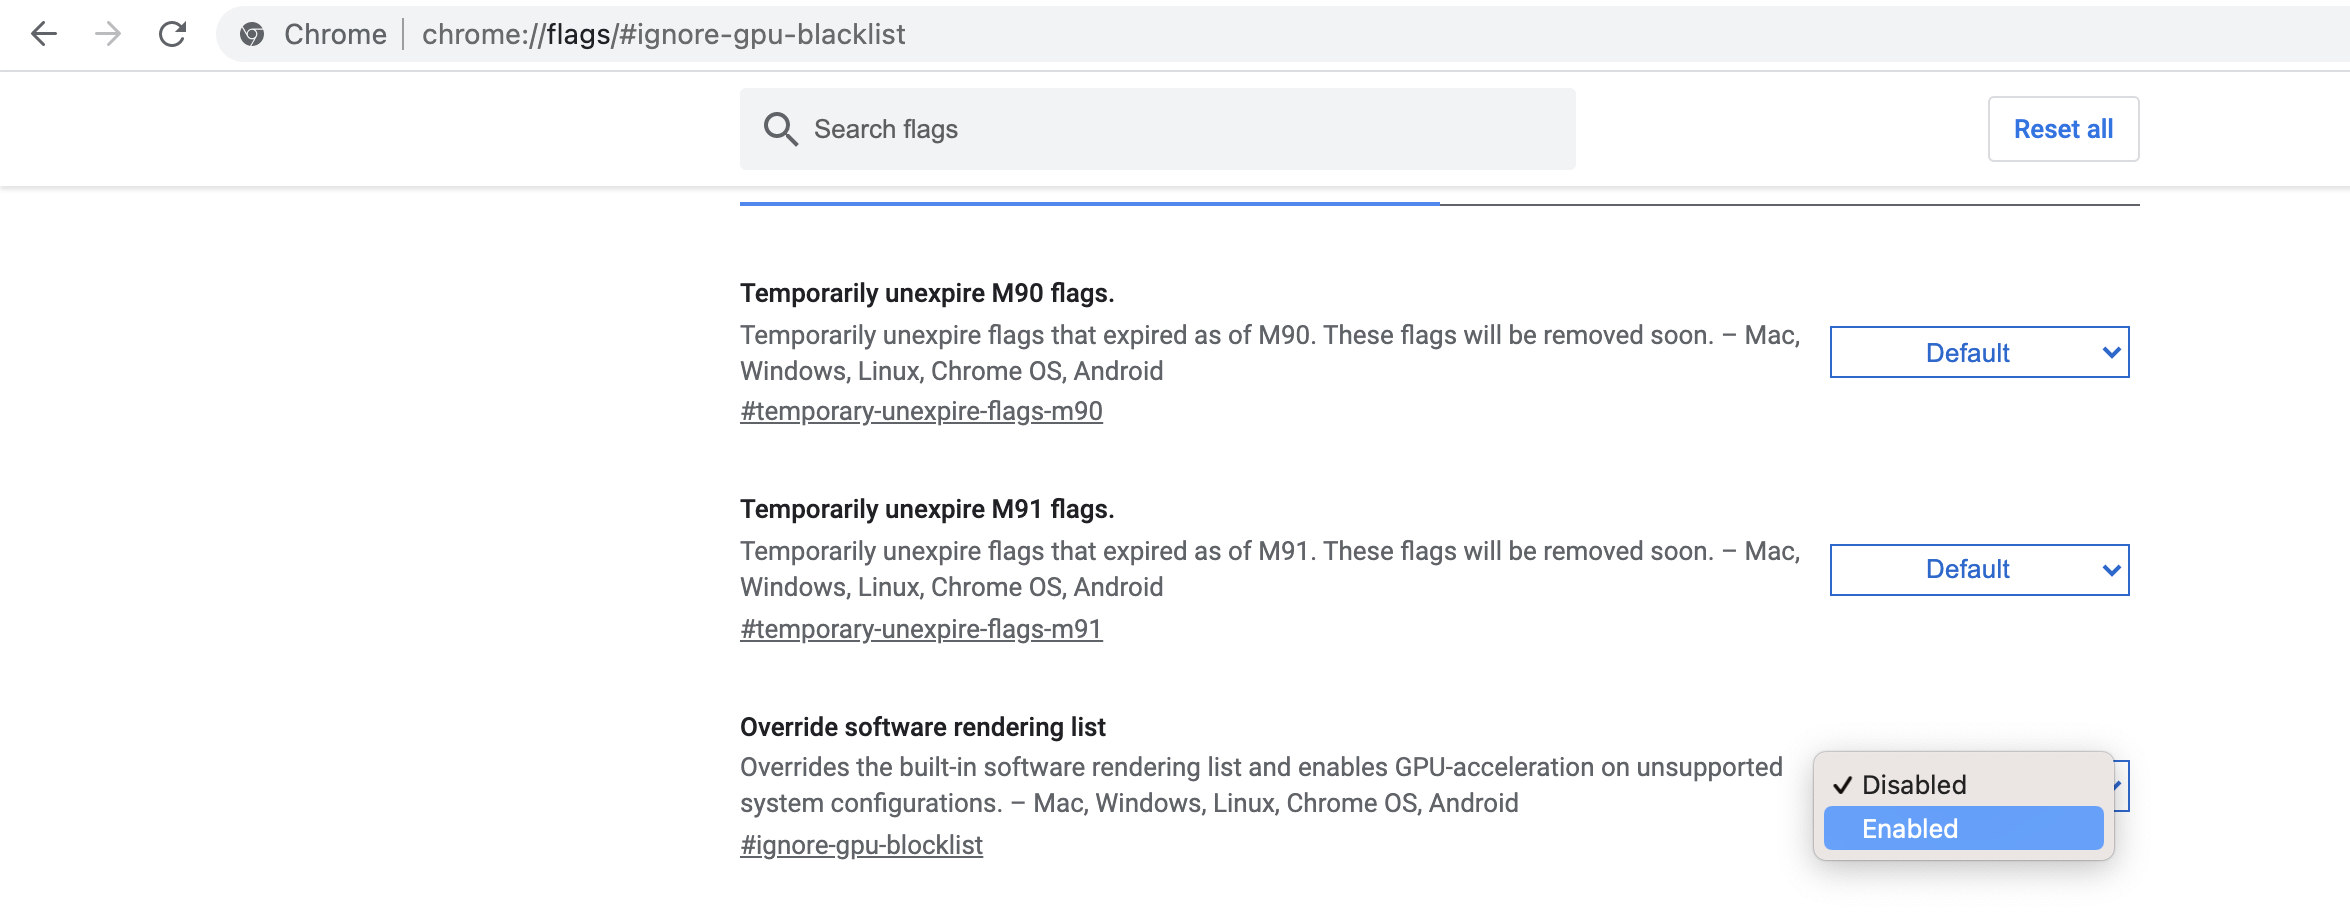 Immagine dell'elenco di rendering software di override in Google Chrome